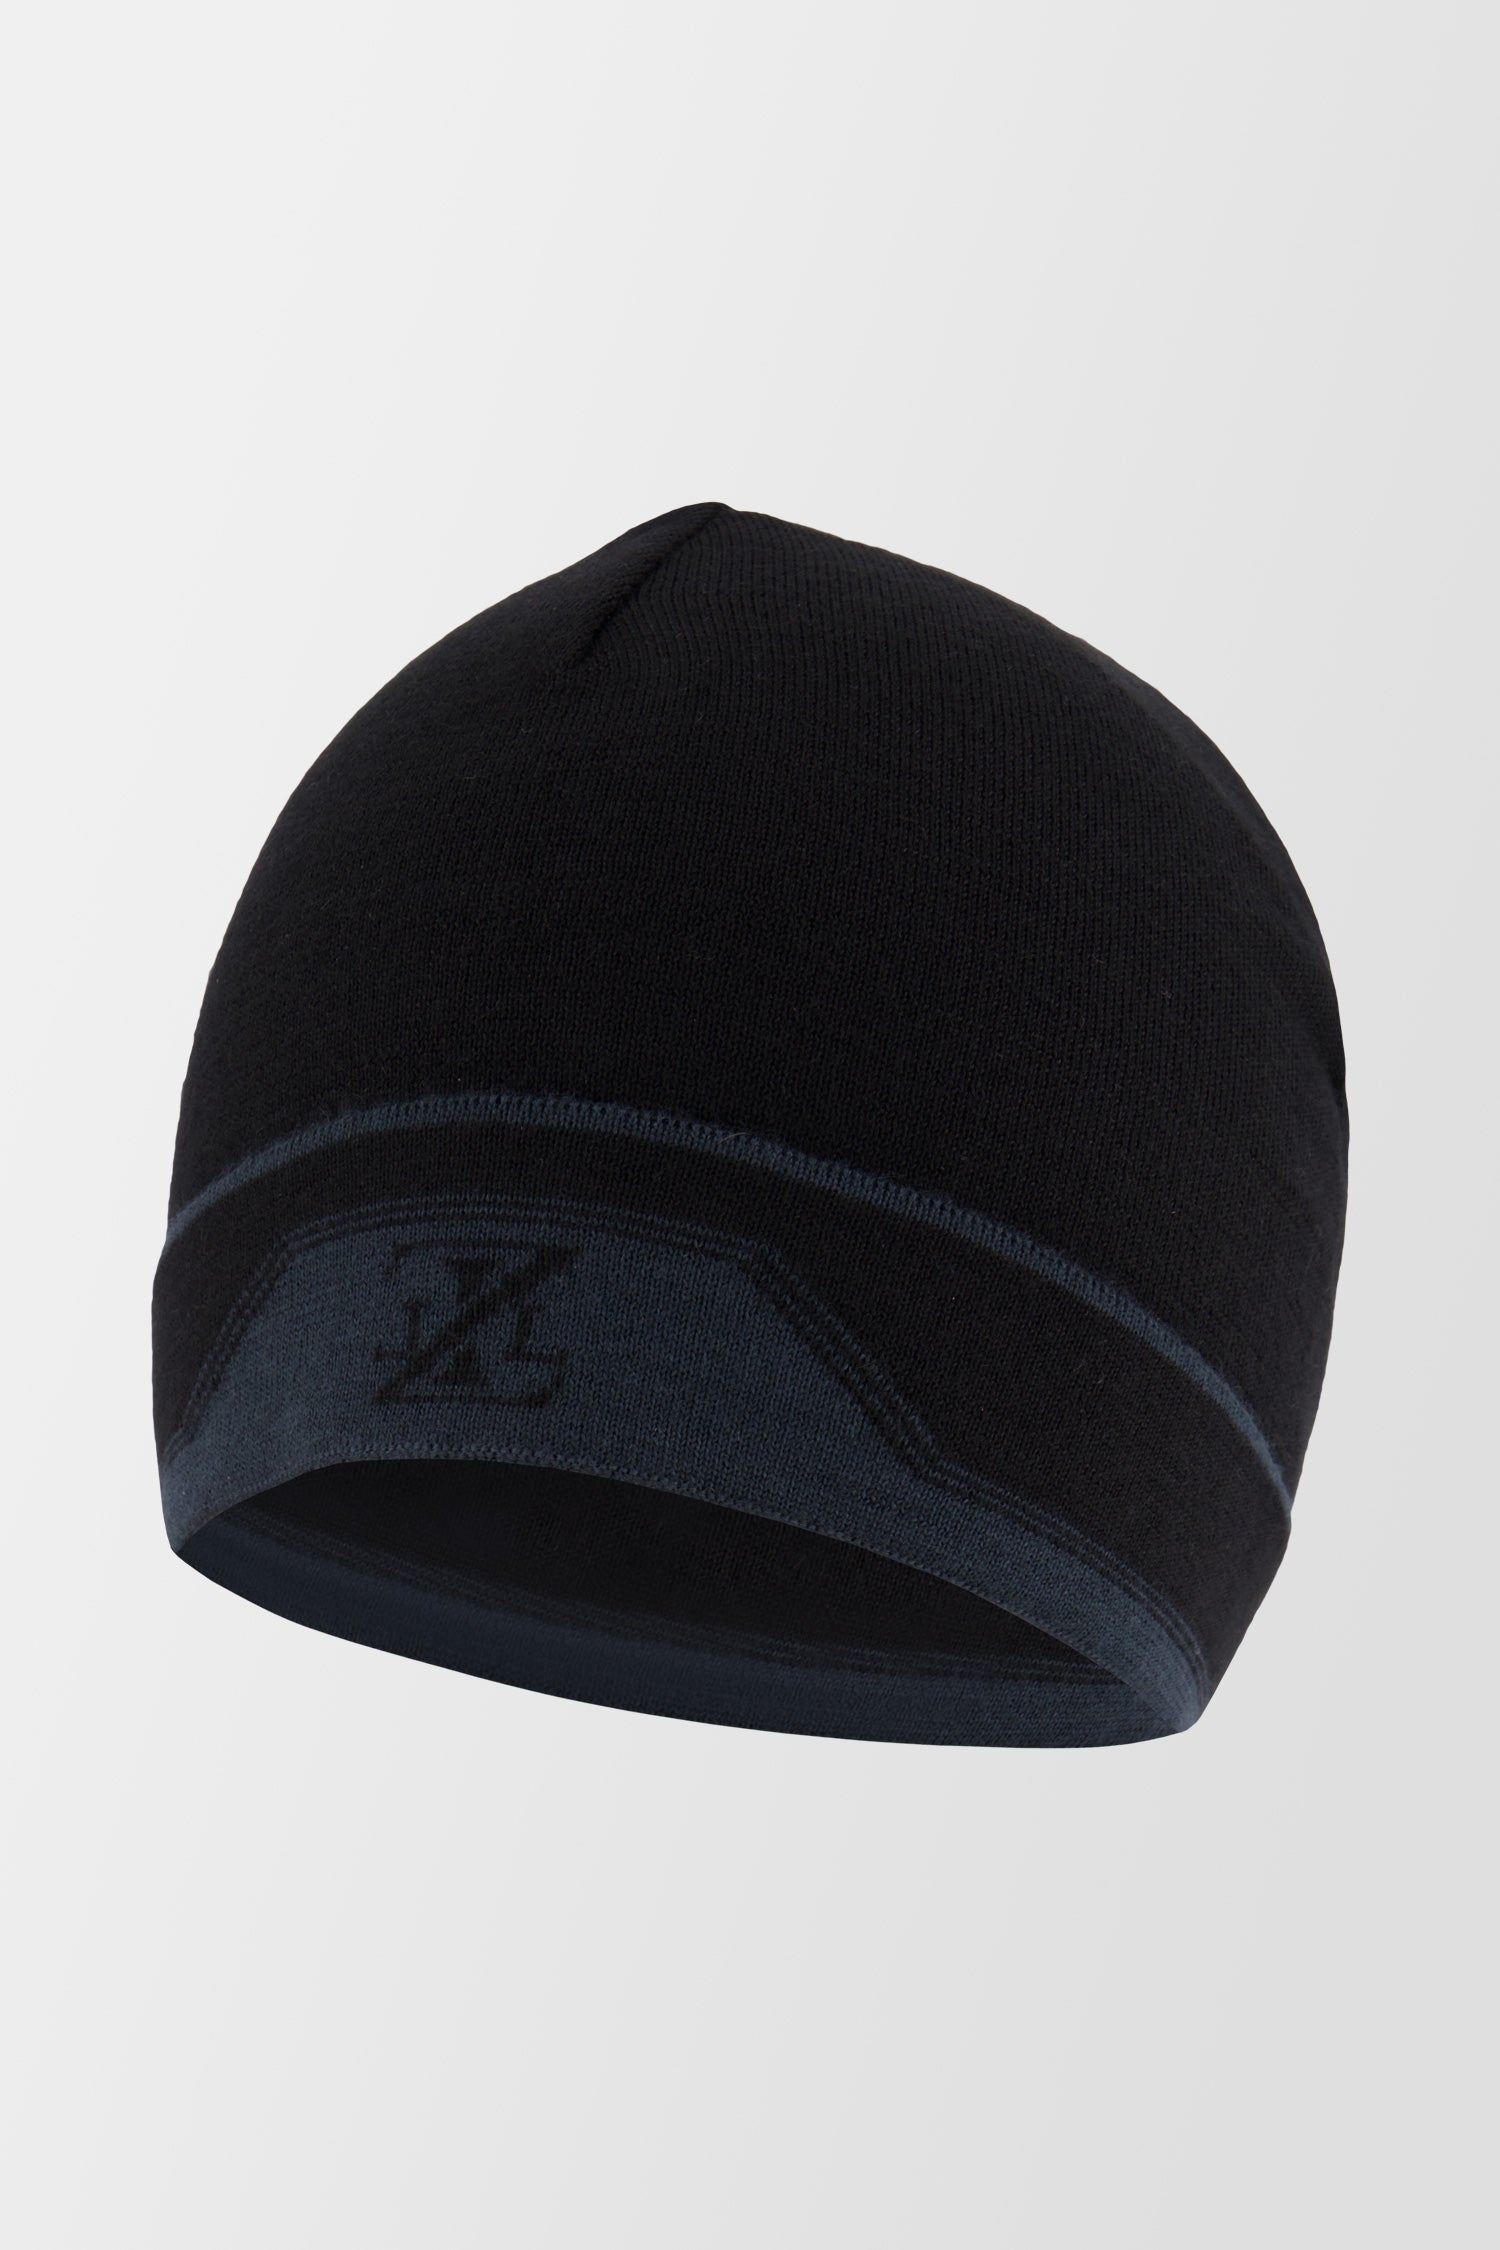 Zilli Black Hat